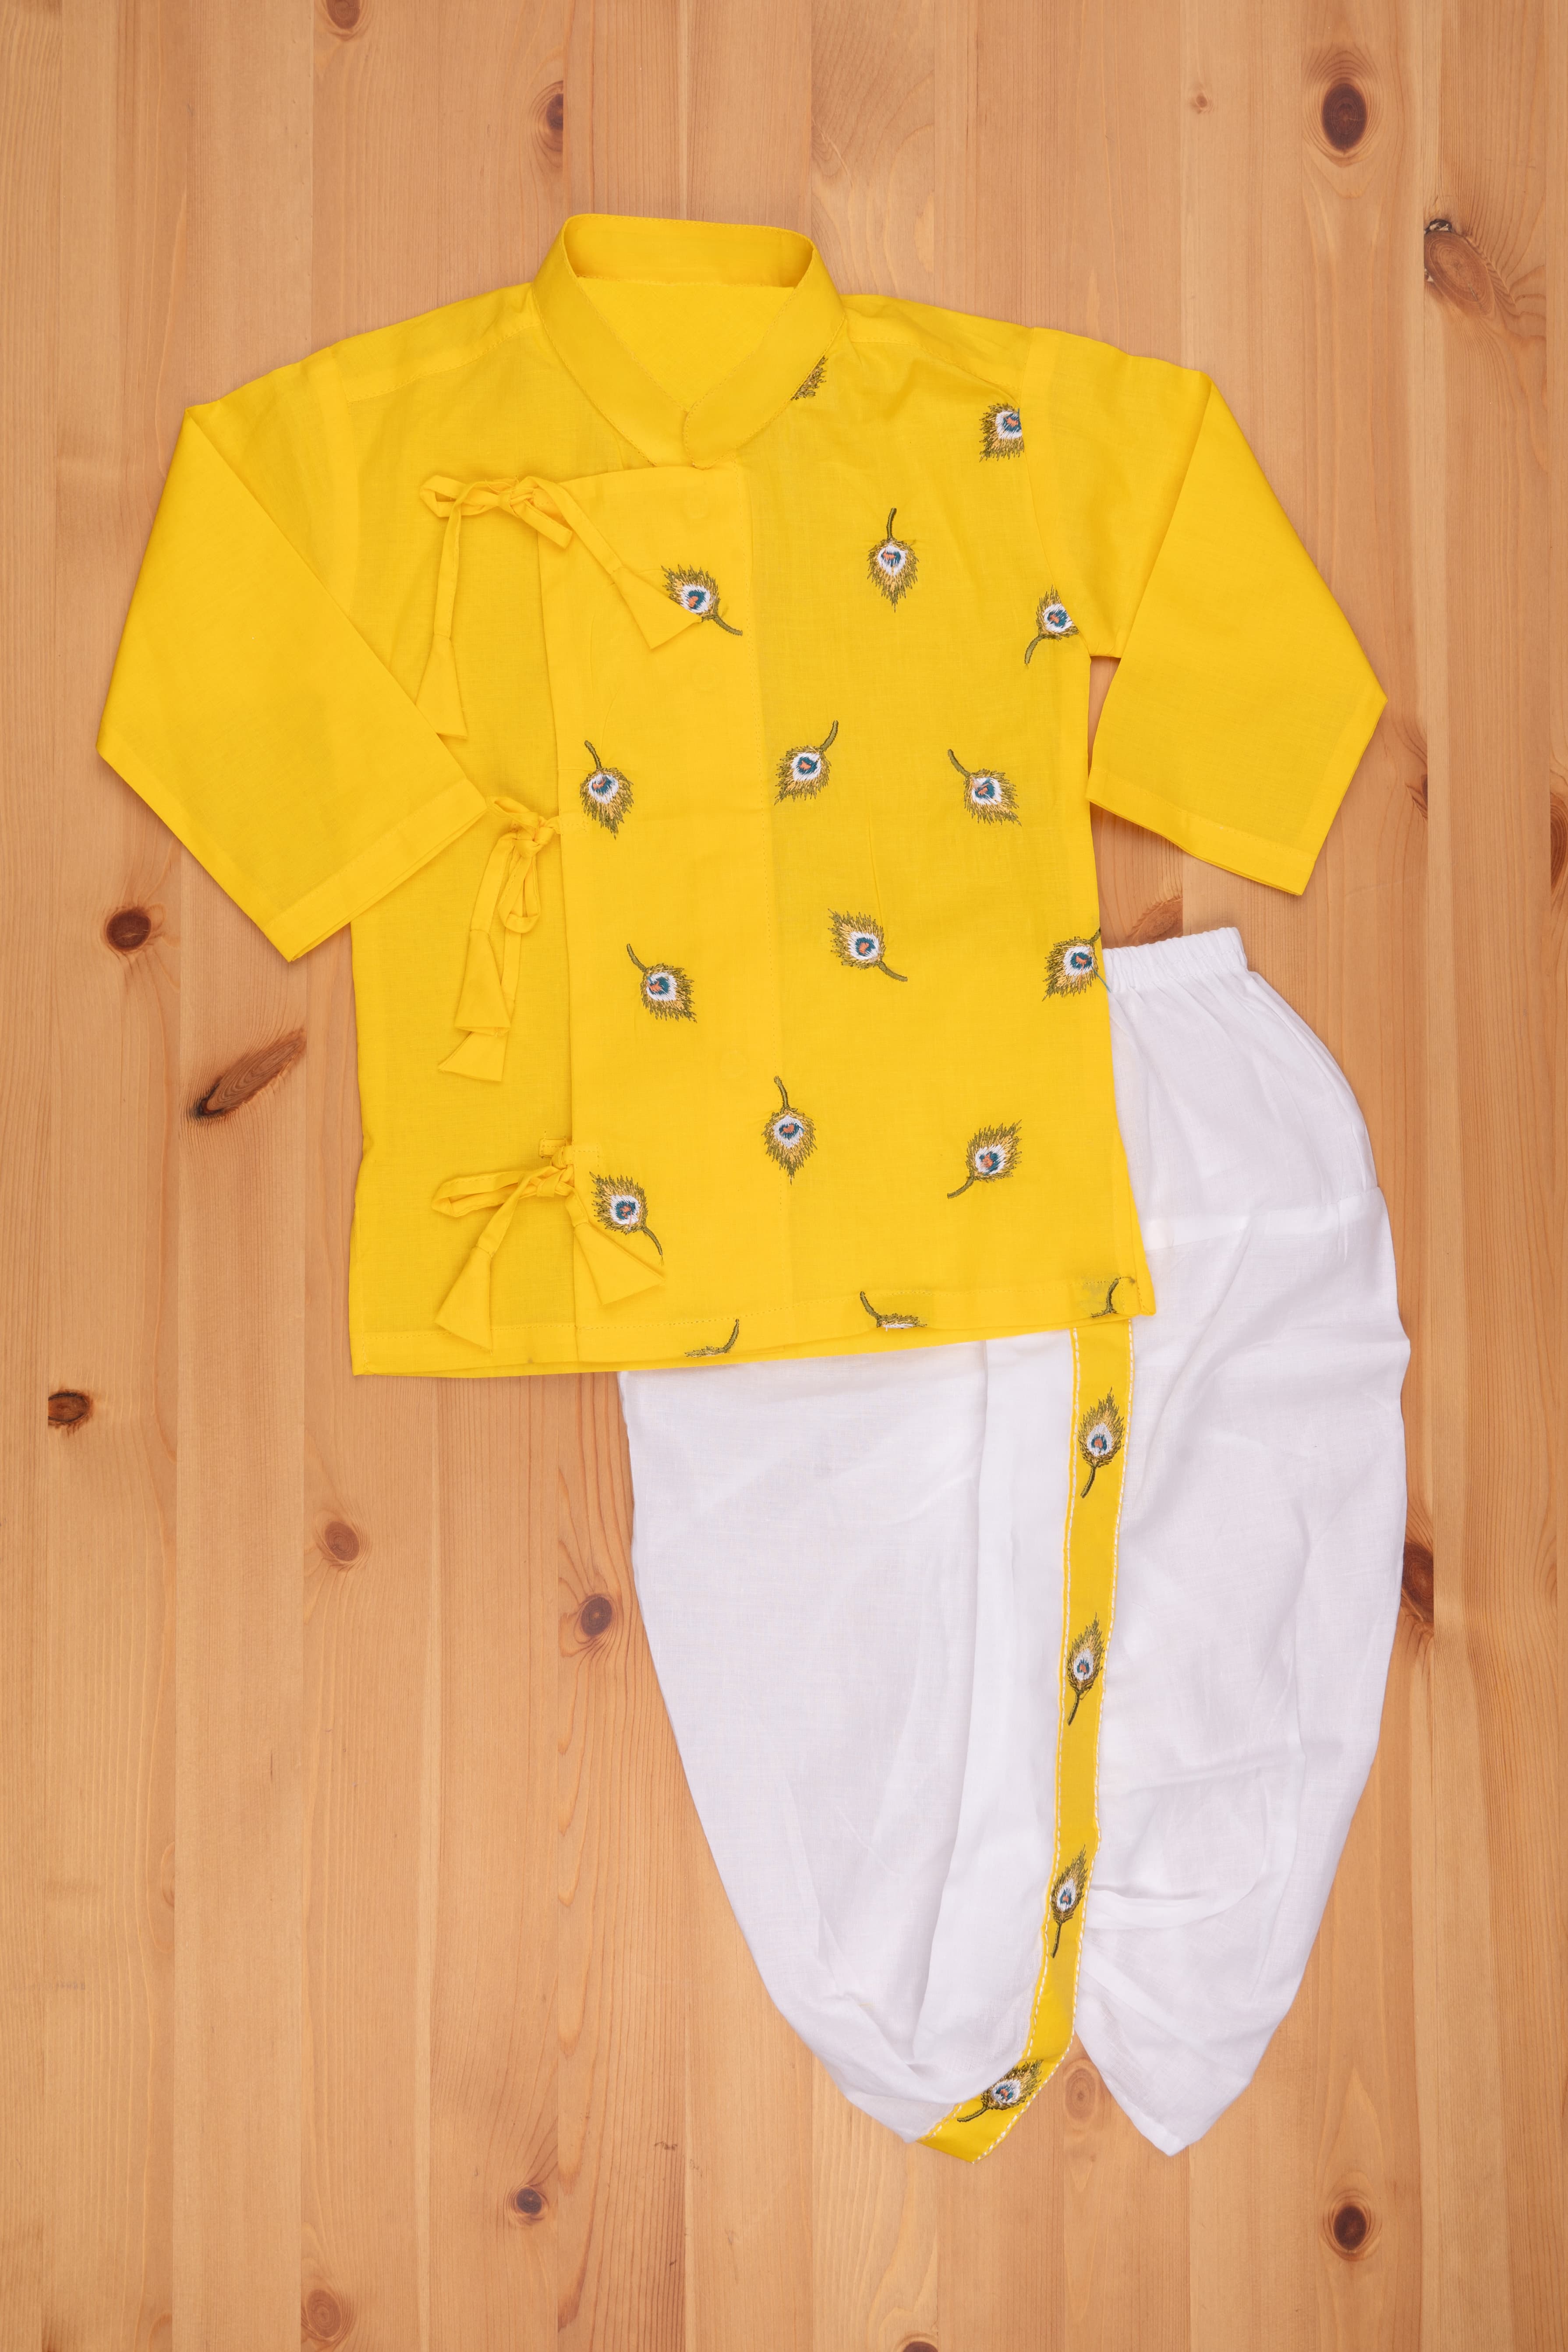 Best Baby Boys Dress Designs under 500 Rupees in Pakistan – Baby Bazar